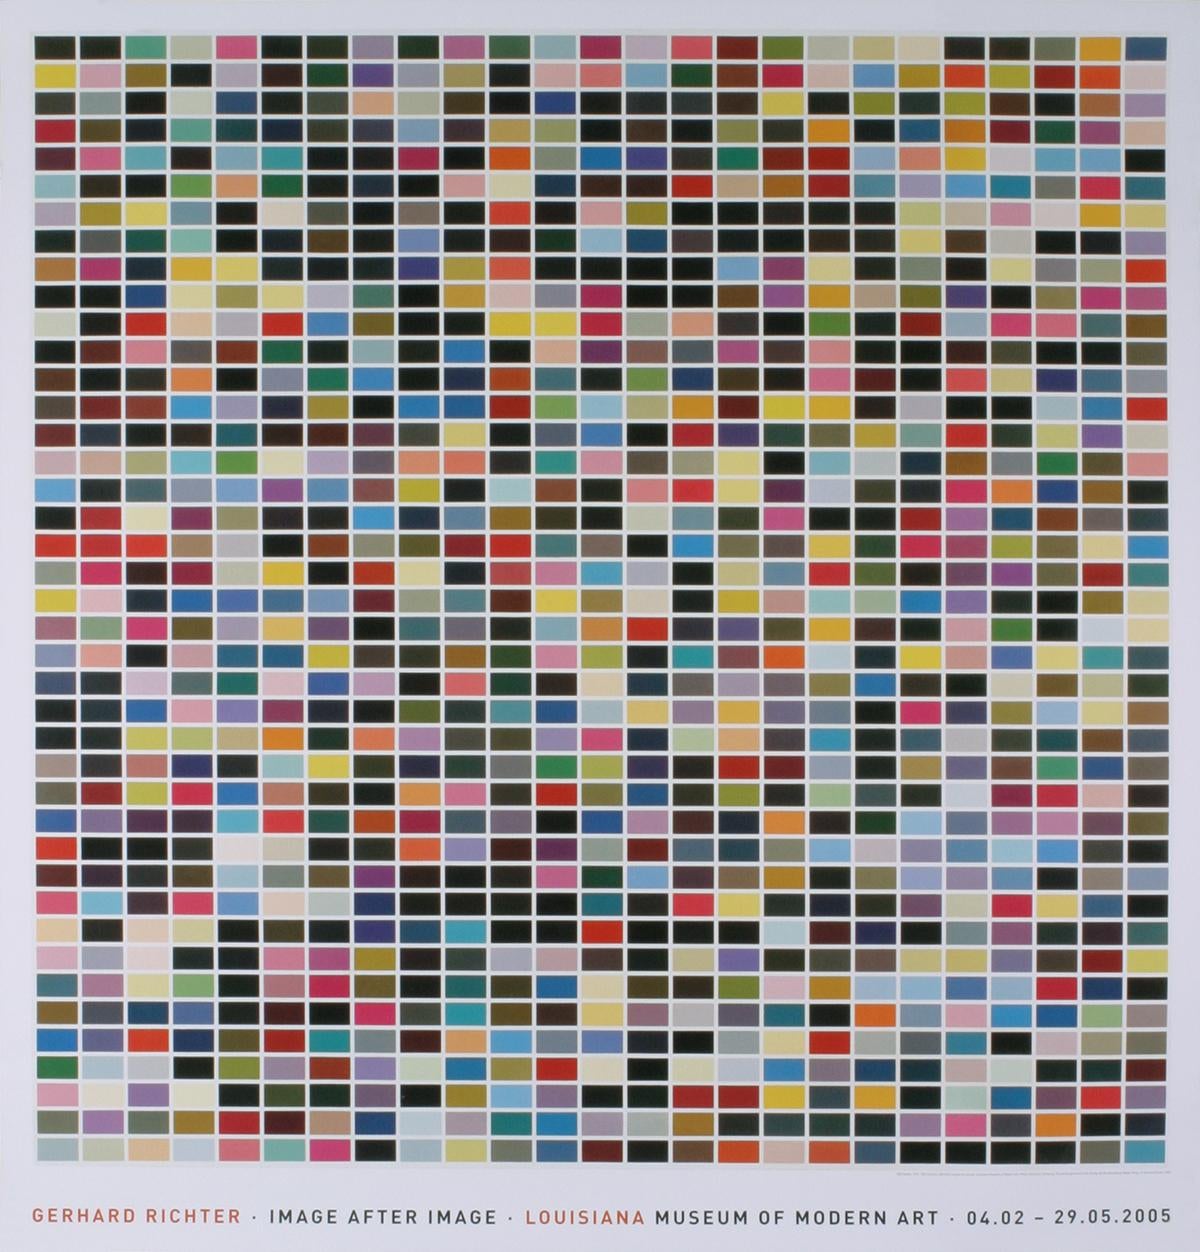 Sku: CB5017
Künstler: Gerhard Richter
Titel: 1025 Farben (1025 Farben)
Jahr: 2013
Unterschrieben: Nein
Medium: Offset-Lithographie
Papierformat: 48 x 46 Zoll (121,92 x 116,84 cm)
Bildgröße: 43,75 x 43,5 Zoll (111,125 x 110,49 cm)
Auflagenhöhe: